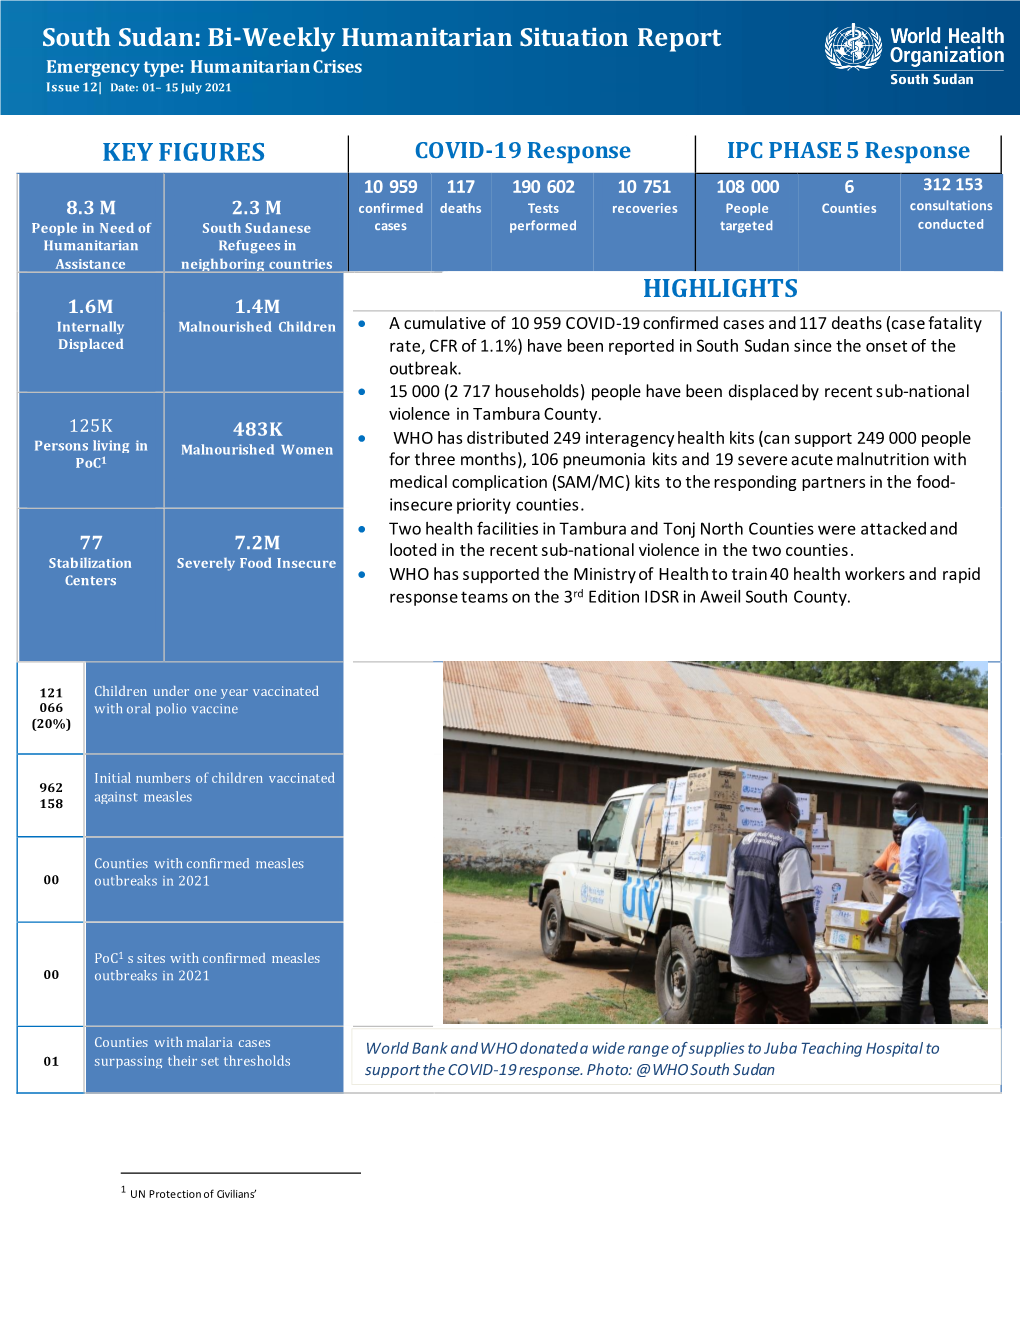 South Sudan: Bi-Weekly Humanitarian Situation Report KEY FIGURES